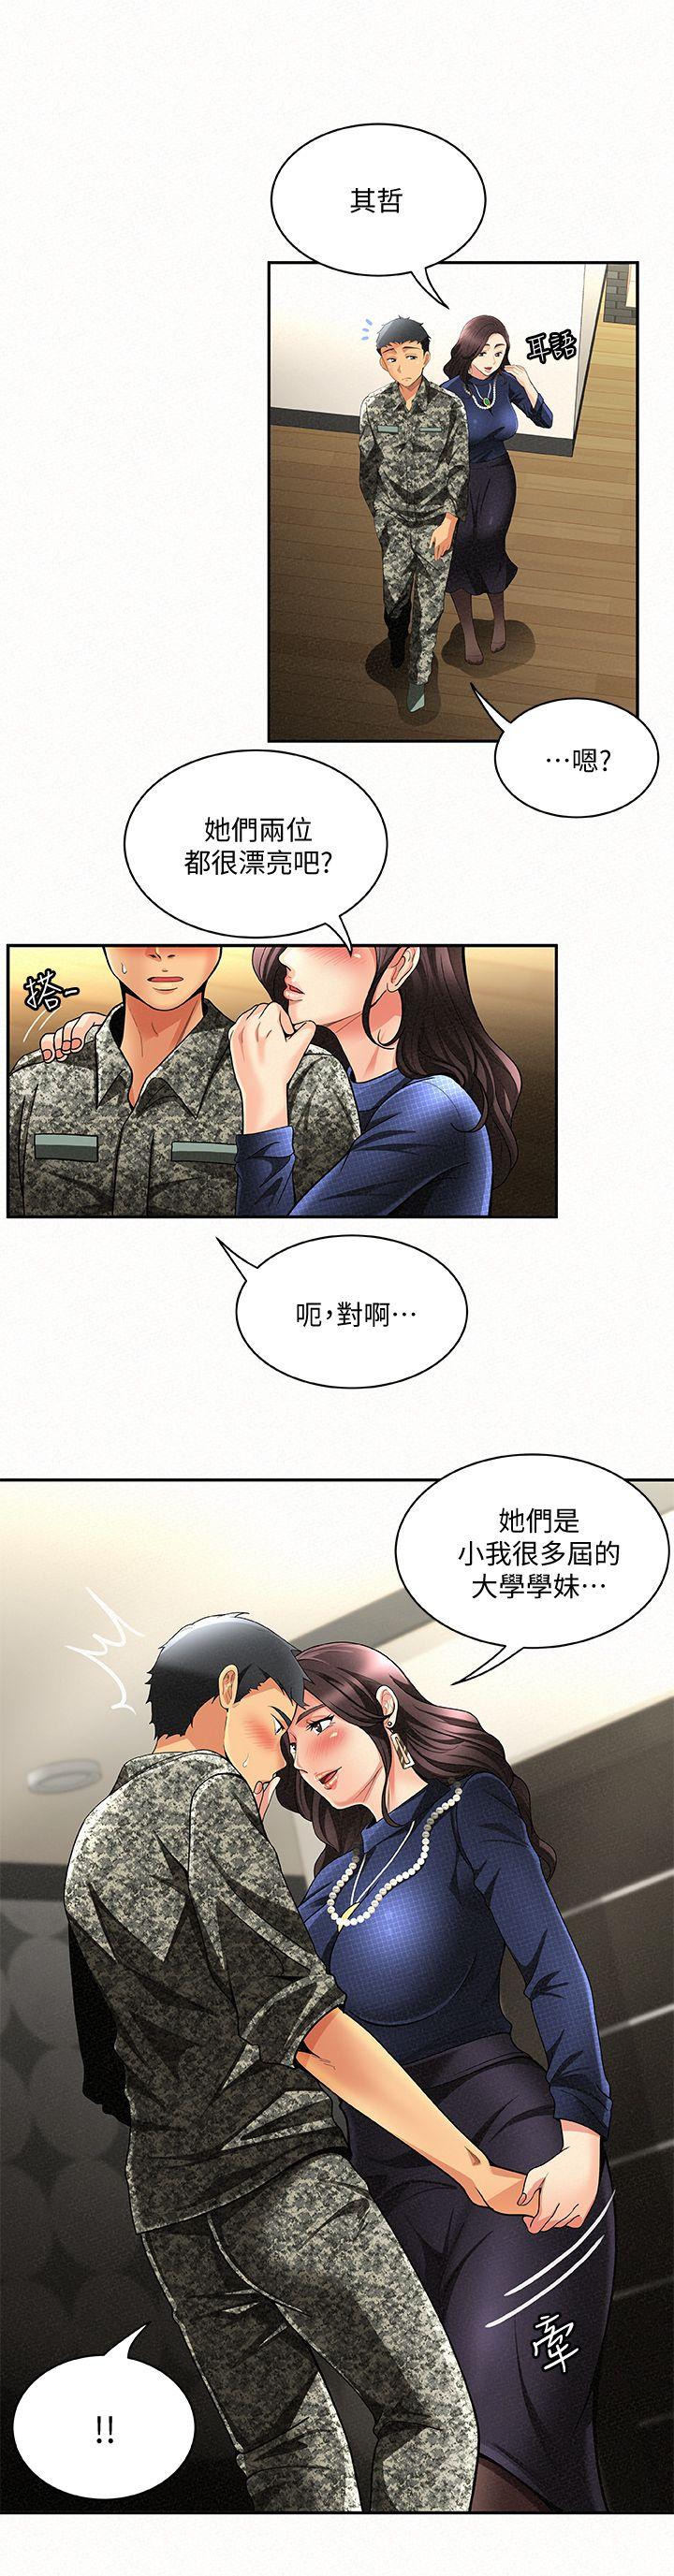 韩国污漫画 報告夫人 第3话-想不想嚐嚐其他有夫之妇? 5